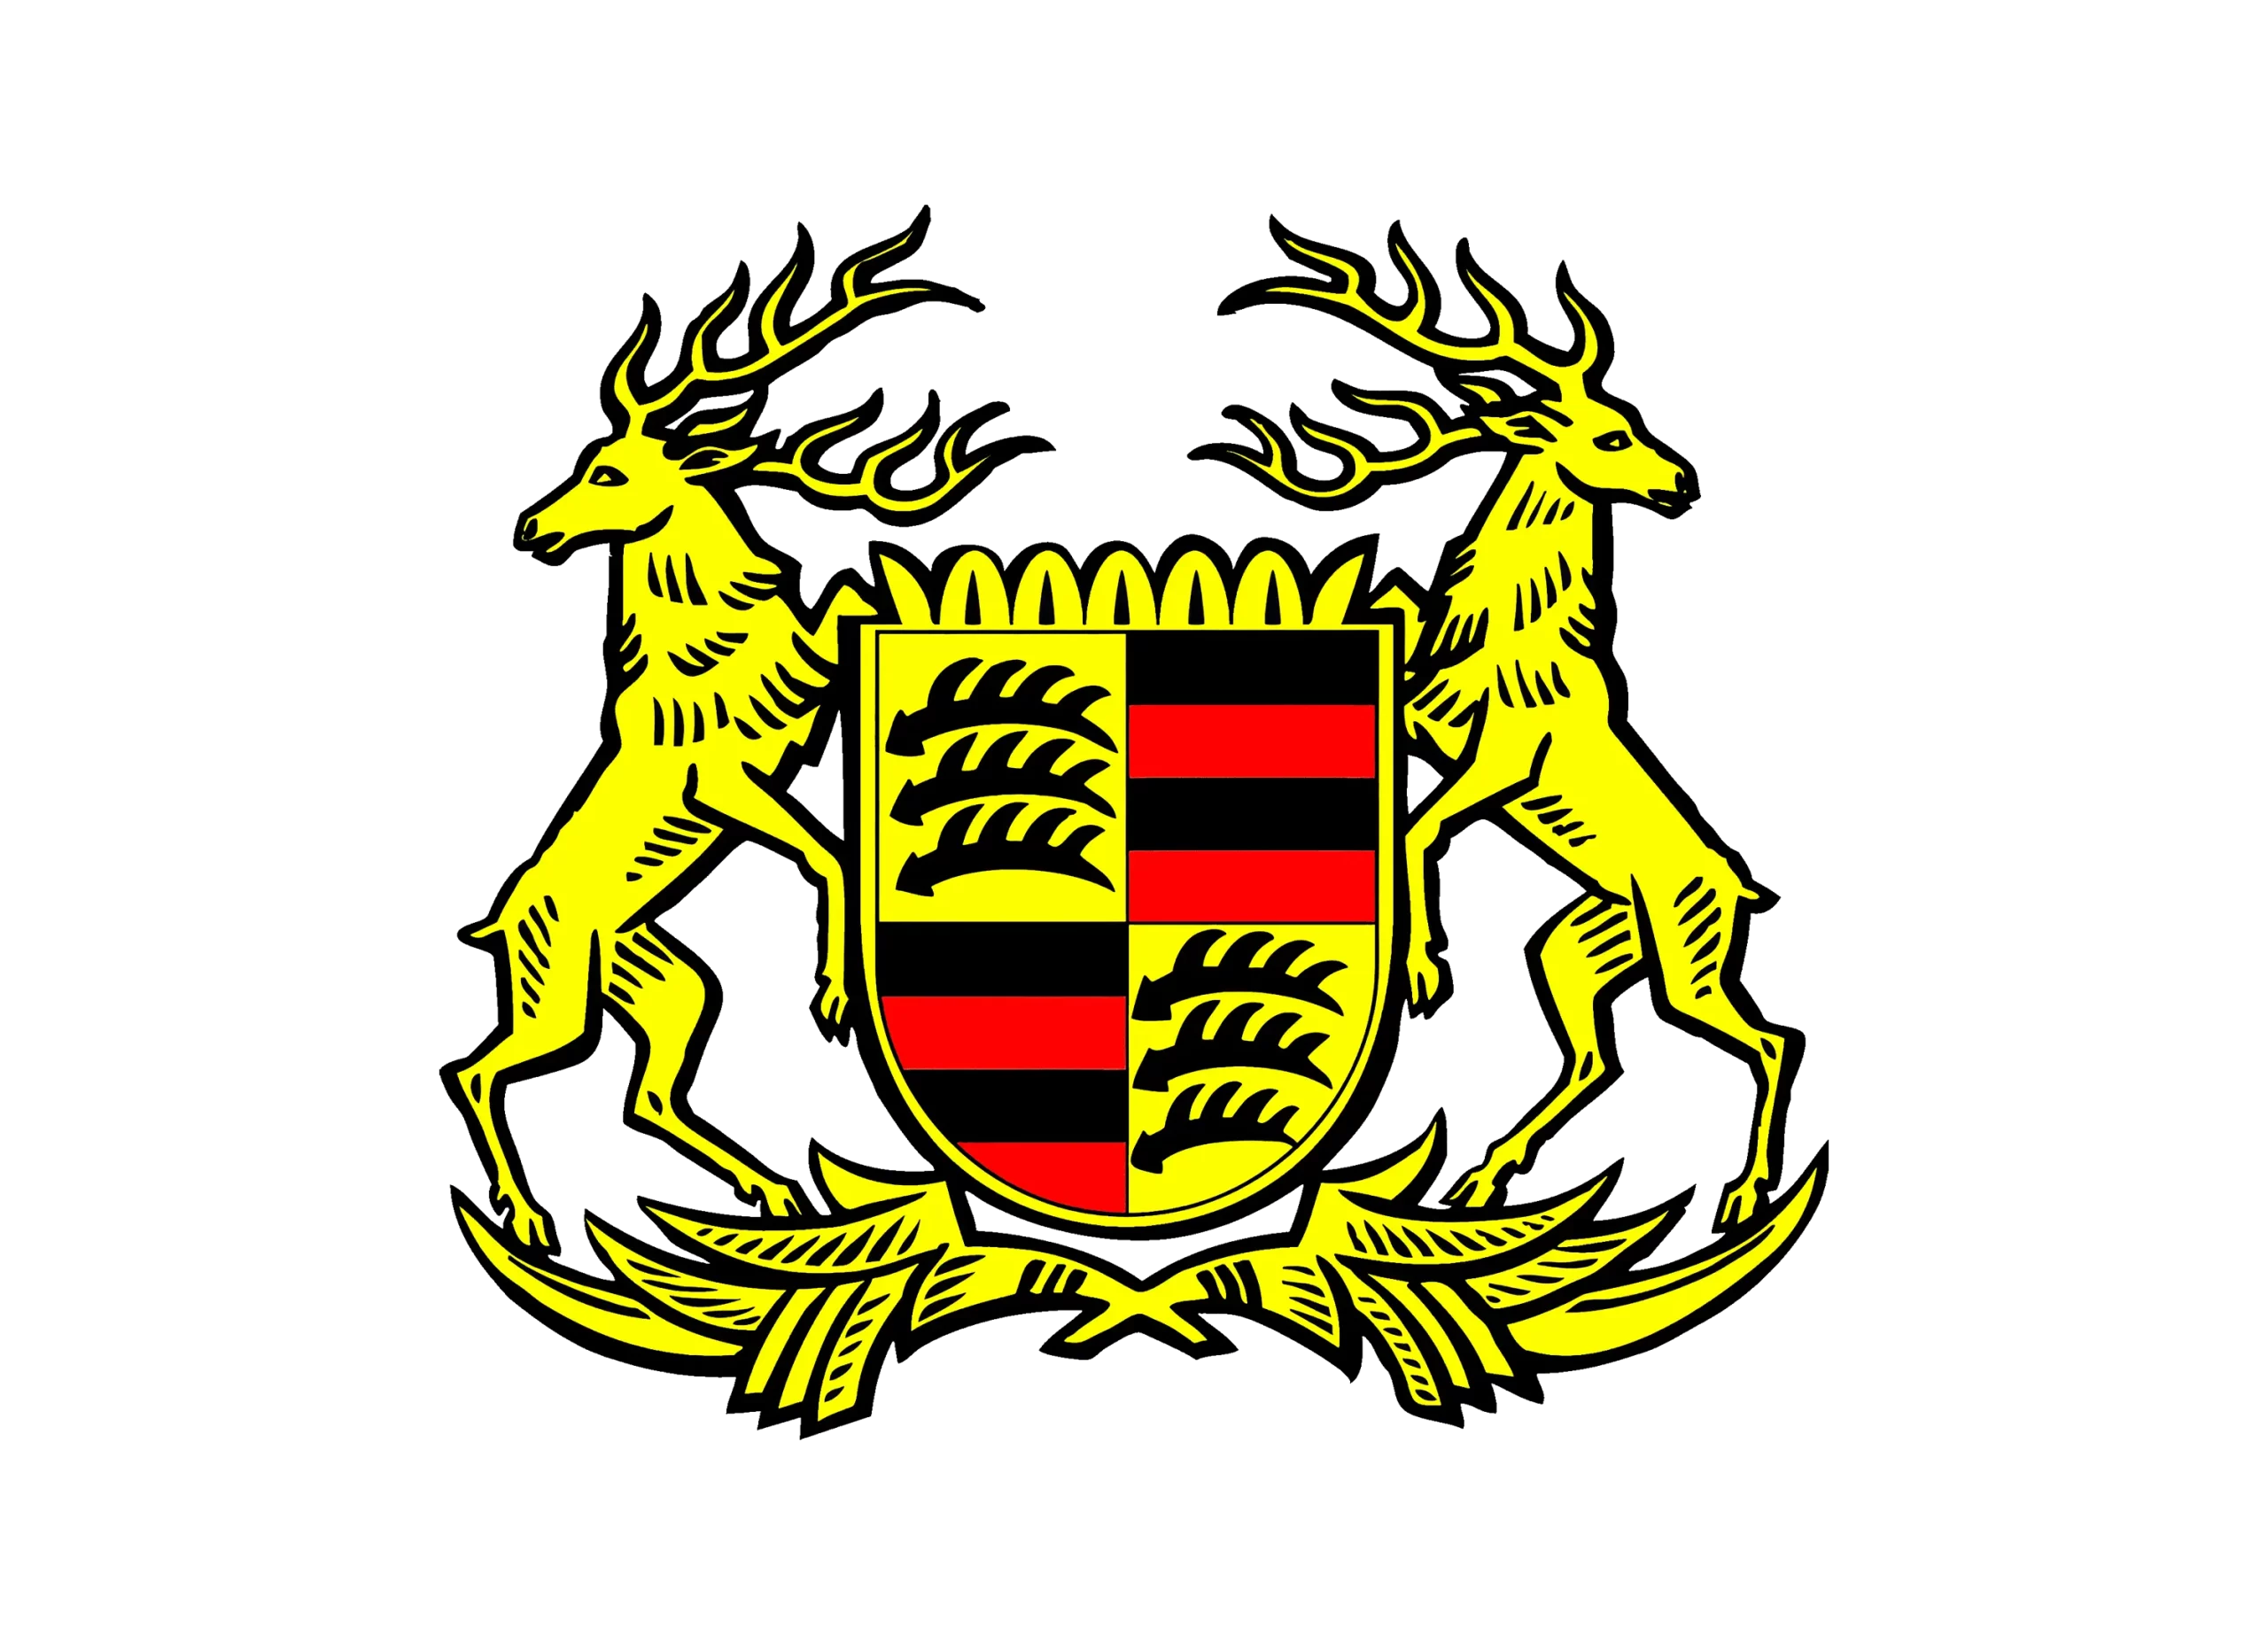 Porsche logo 1922-1938